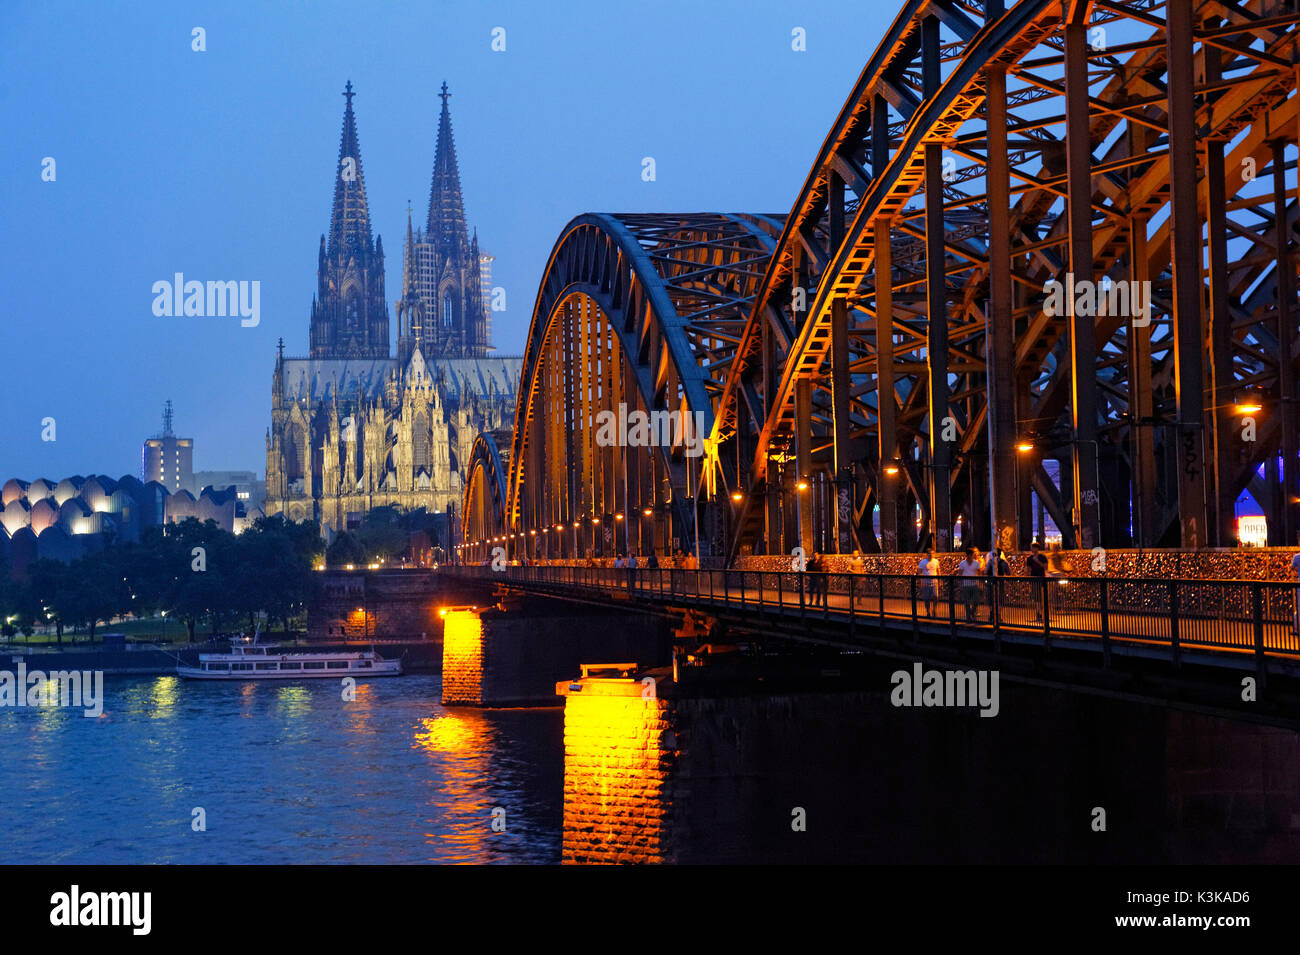 In Germania, in Renania settentrionale-Vestfalia, Colonia (Köln), il fiume Reno, il ponte Hohenzollern-Brücke e la cattedrale di Colonia sono classificati come patrimonio mondiale dall' UNESCO Foto Stock